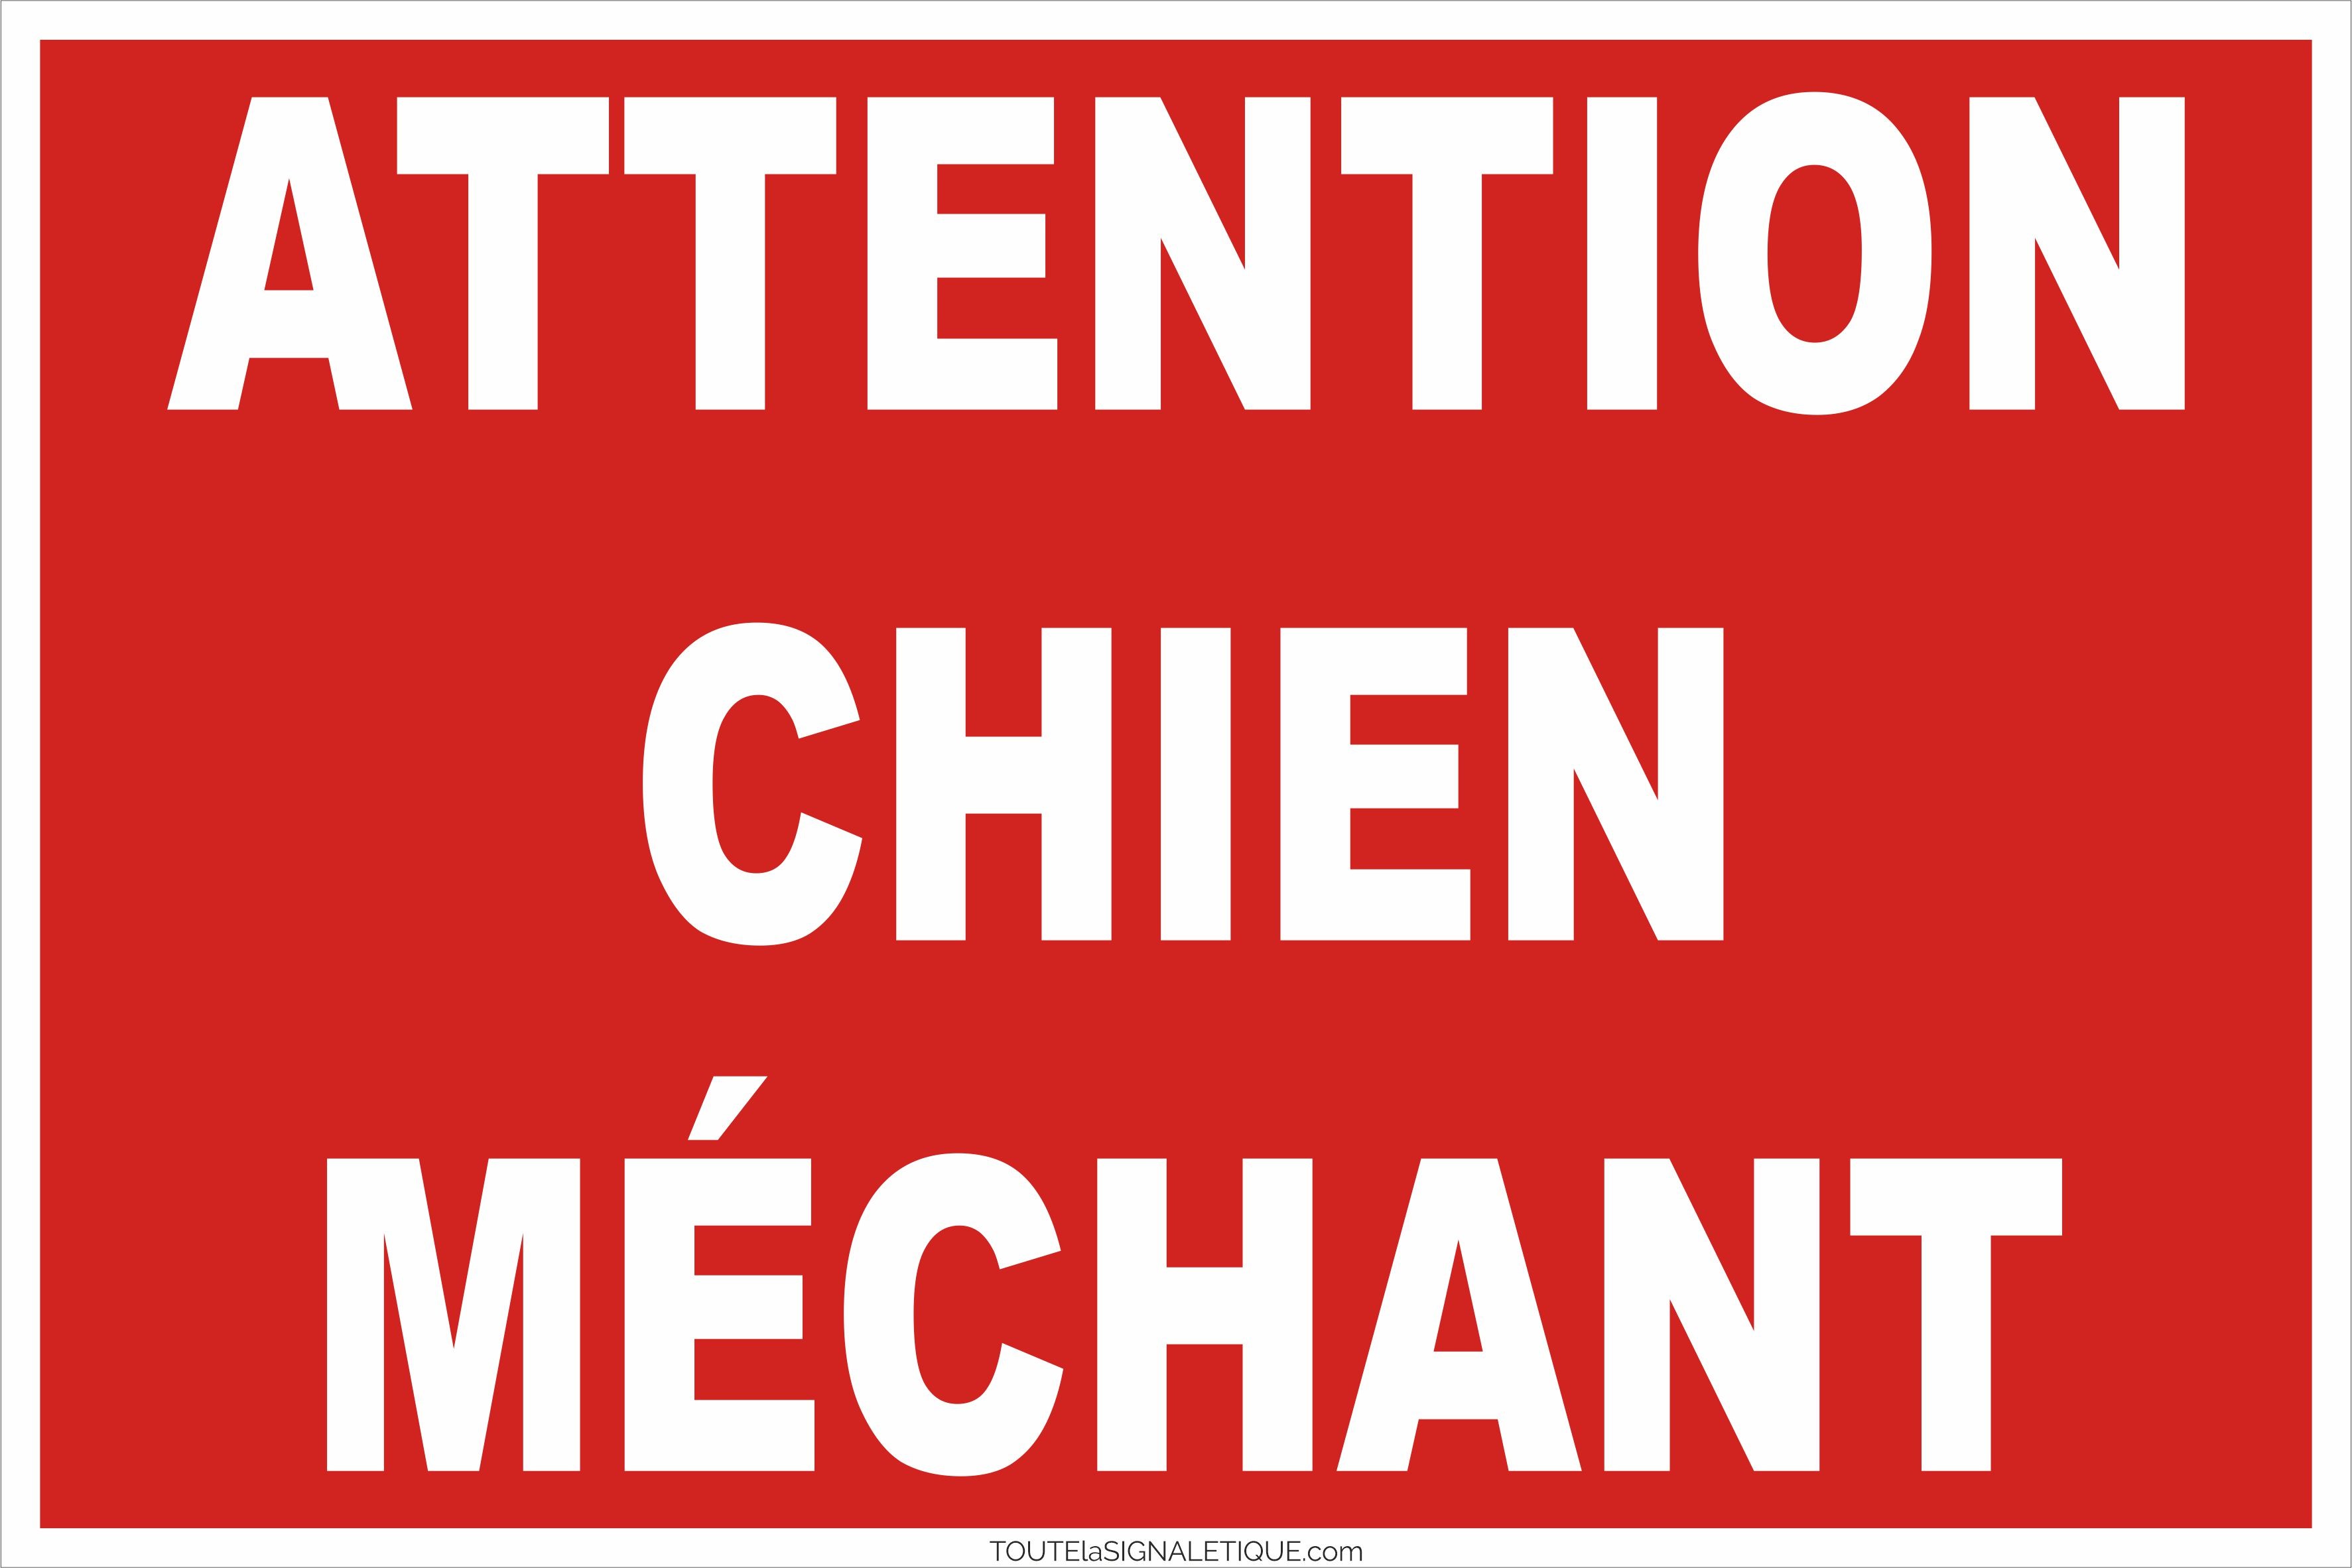 Panneau Attention au Chien Rouge - Signalisation de Sécurité